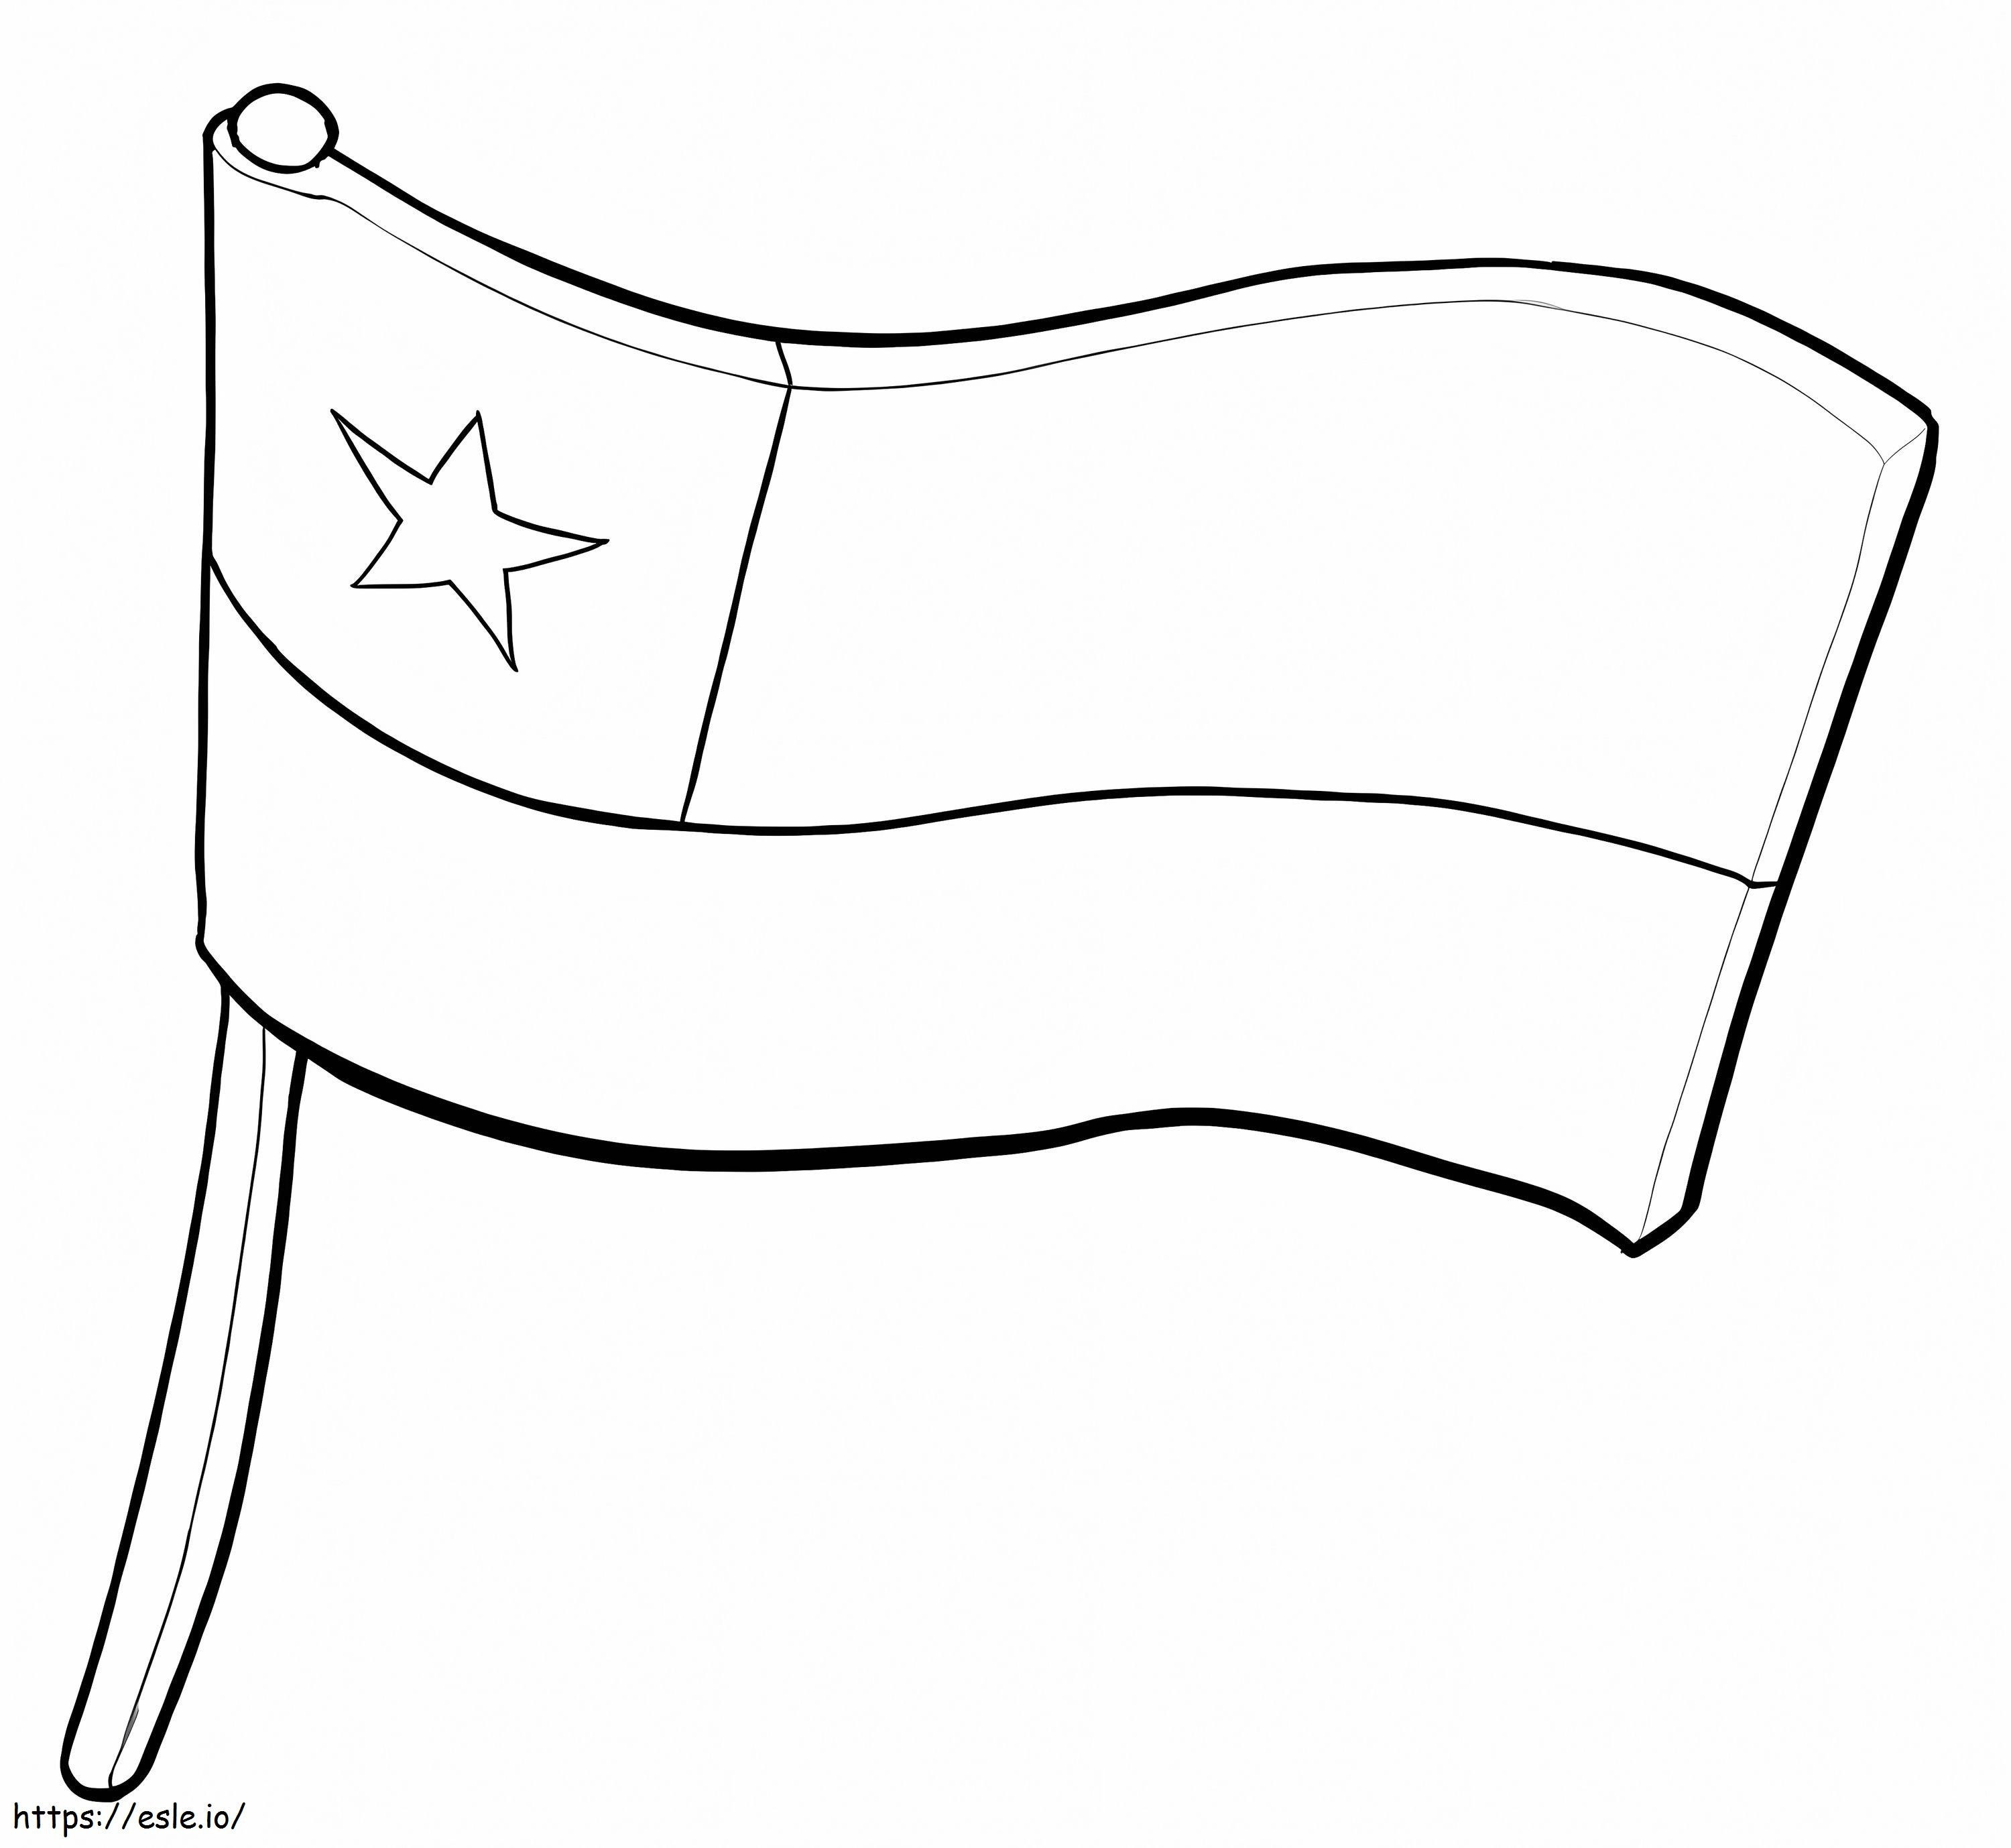 Chilenische Flagge ausmalbilder